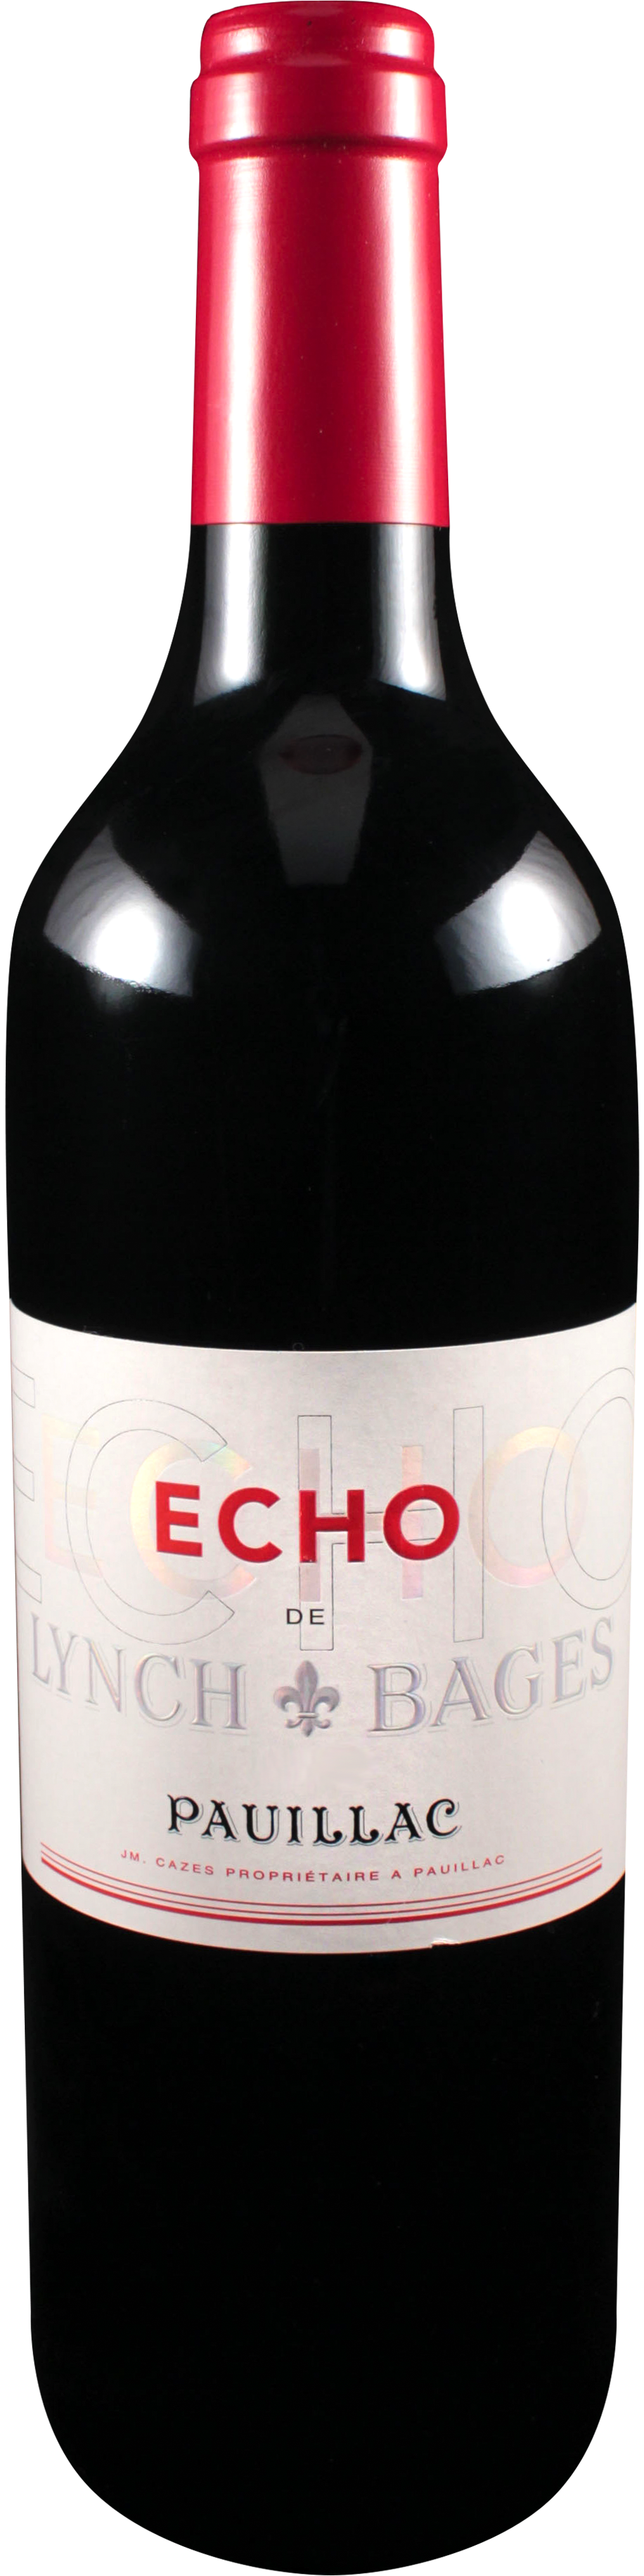 Bottle shot of 2016 Echo de Lynch Bages, 5ème Cru Pauillac